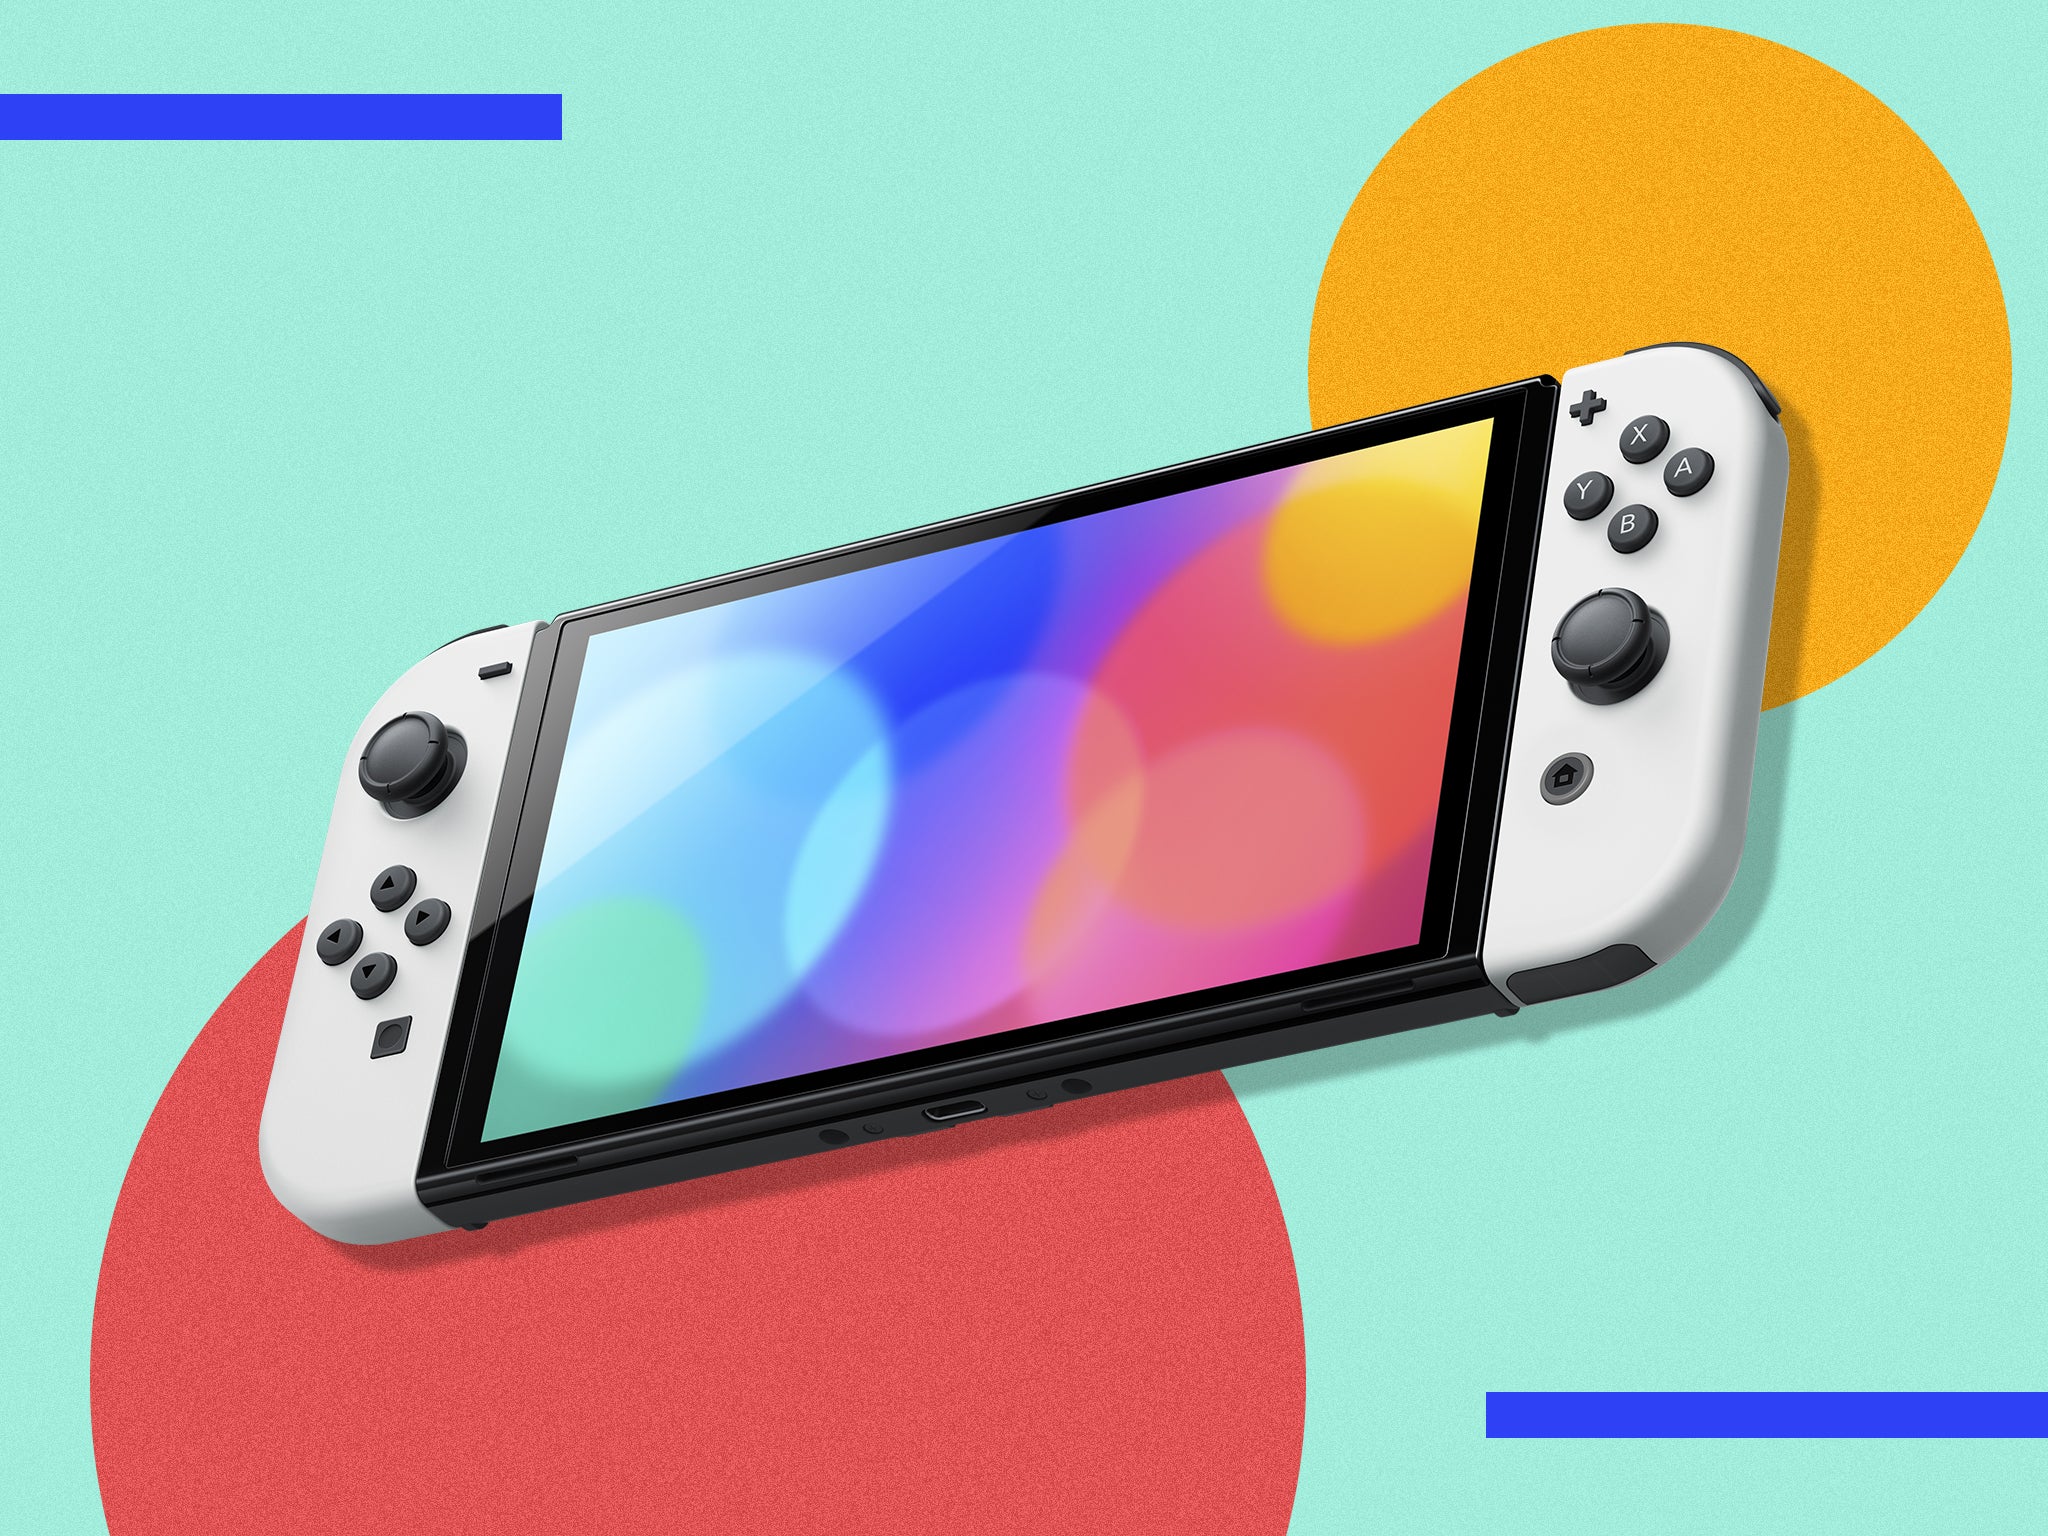 Nintendo Switch 2: Rumors, specs & price speculation - Dexerto